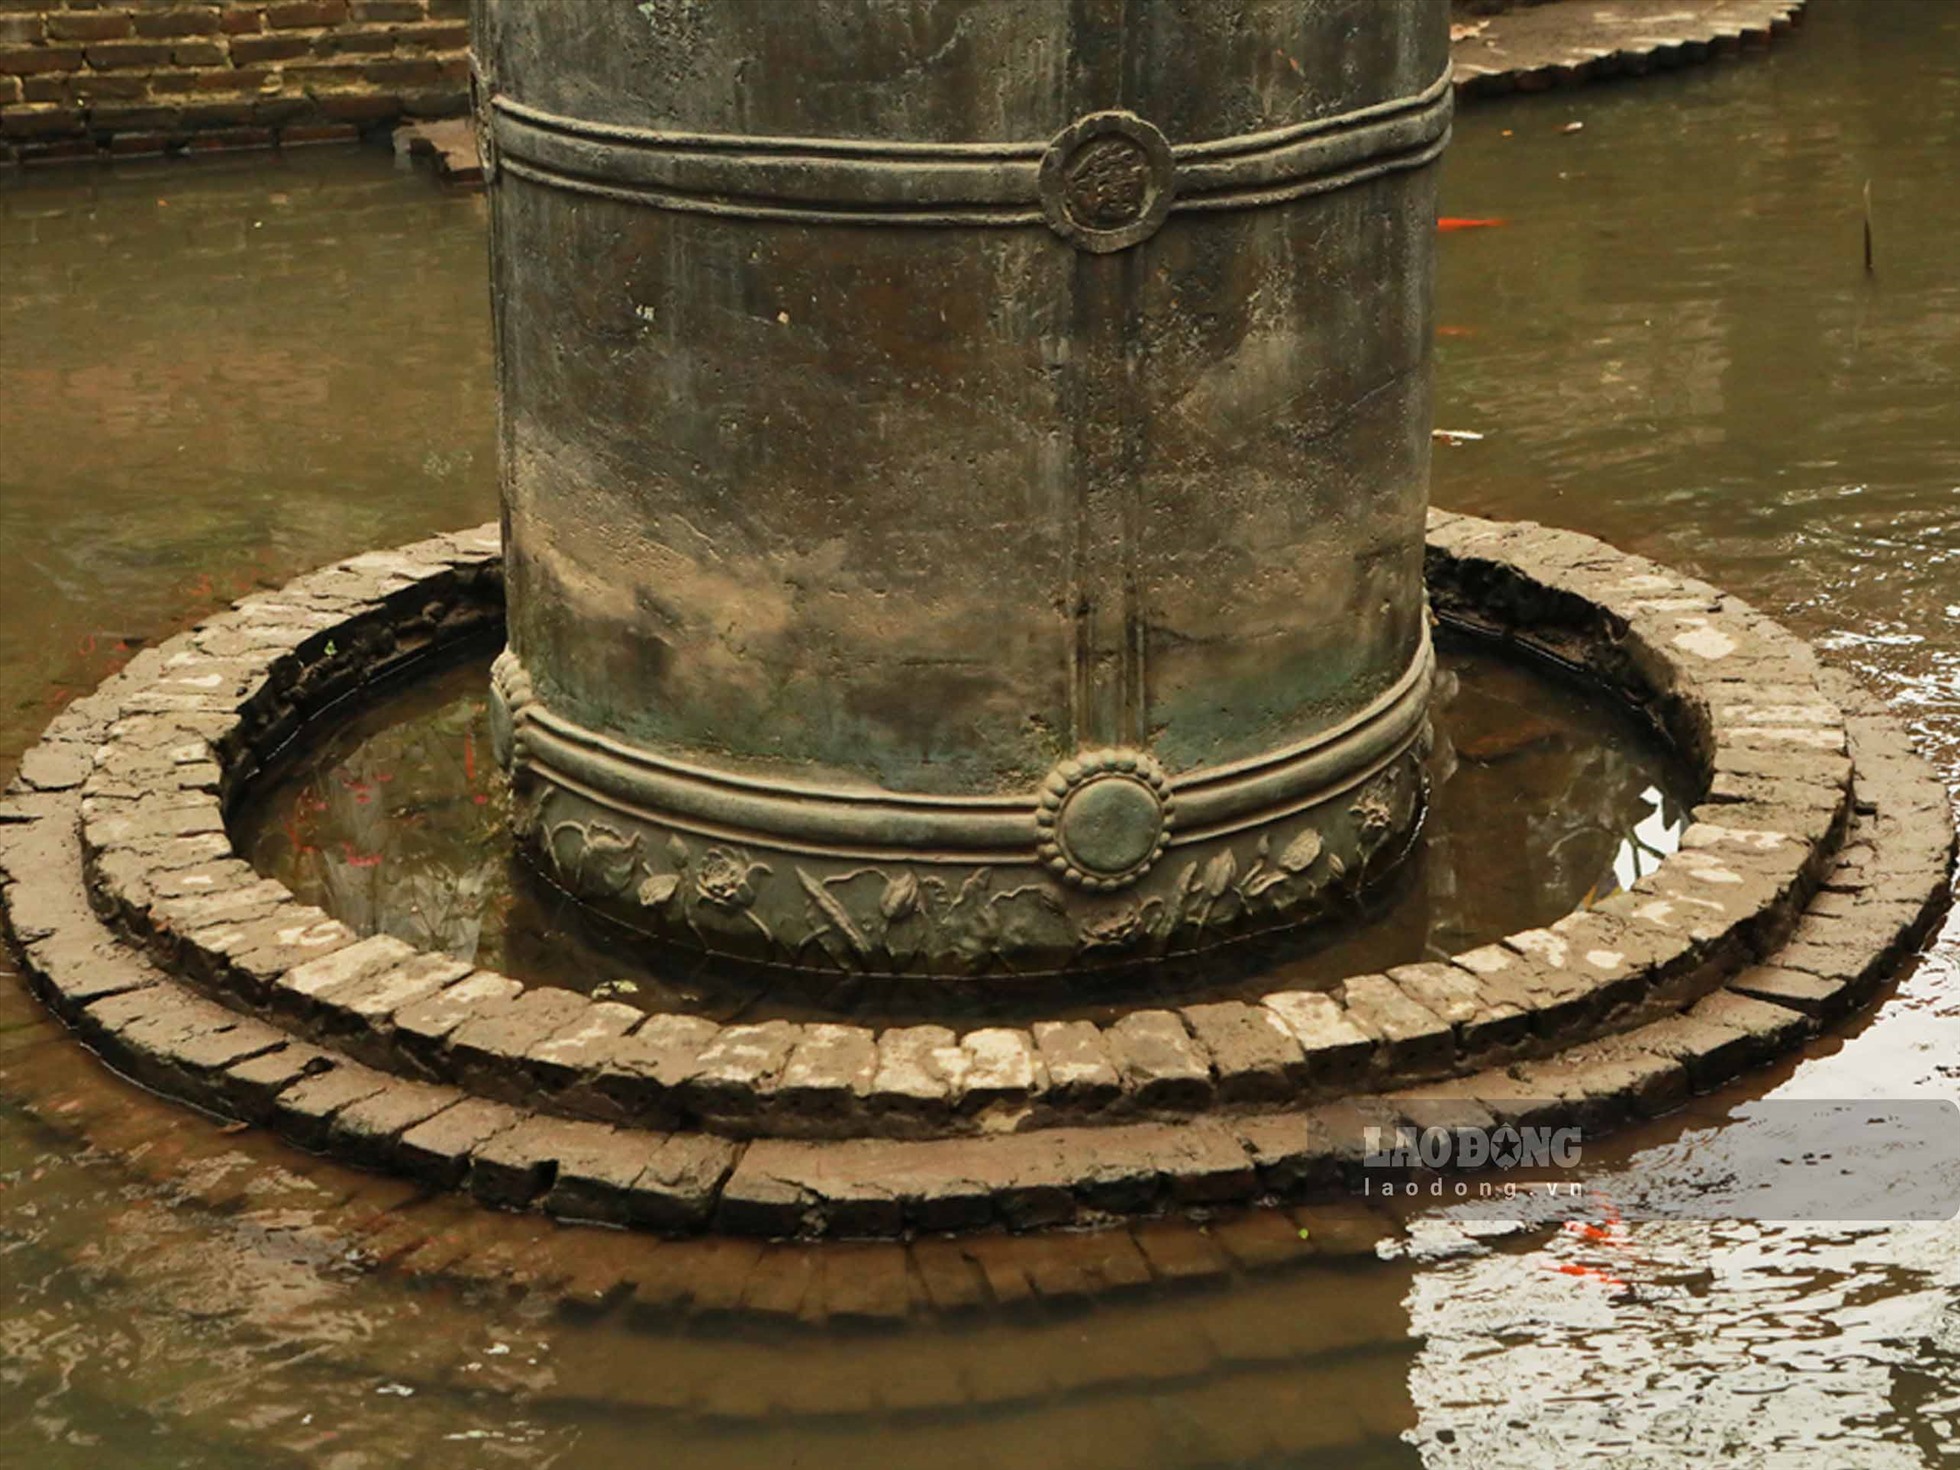 Vì sao quả chuông dưới hồ nước của chùa Cổ Lễ ở Nam Định lại chưa một lần được thỉnh tiếng? - Ảnh 7.